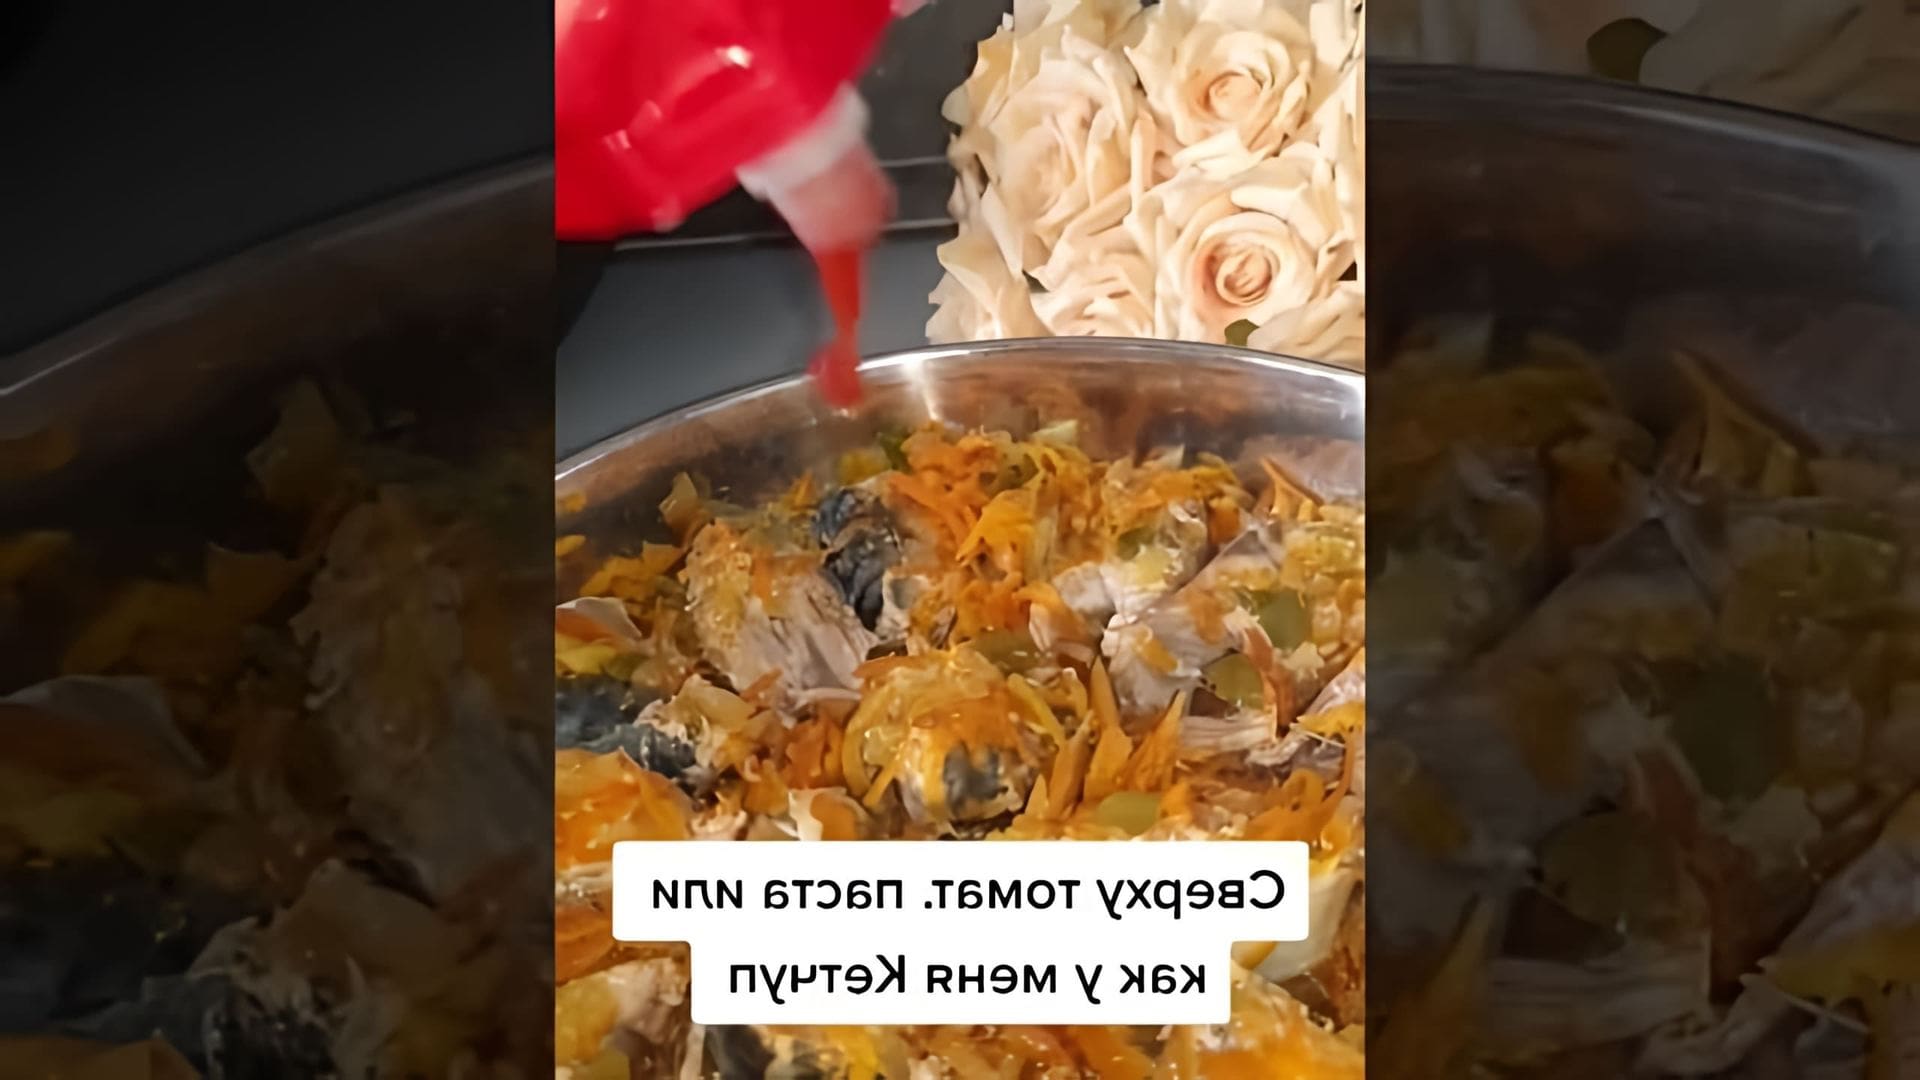 В этом видео-ролике вы увидите, как приготовить вкусное и полезное блюдо - тушеную скумбрию с овощами